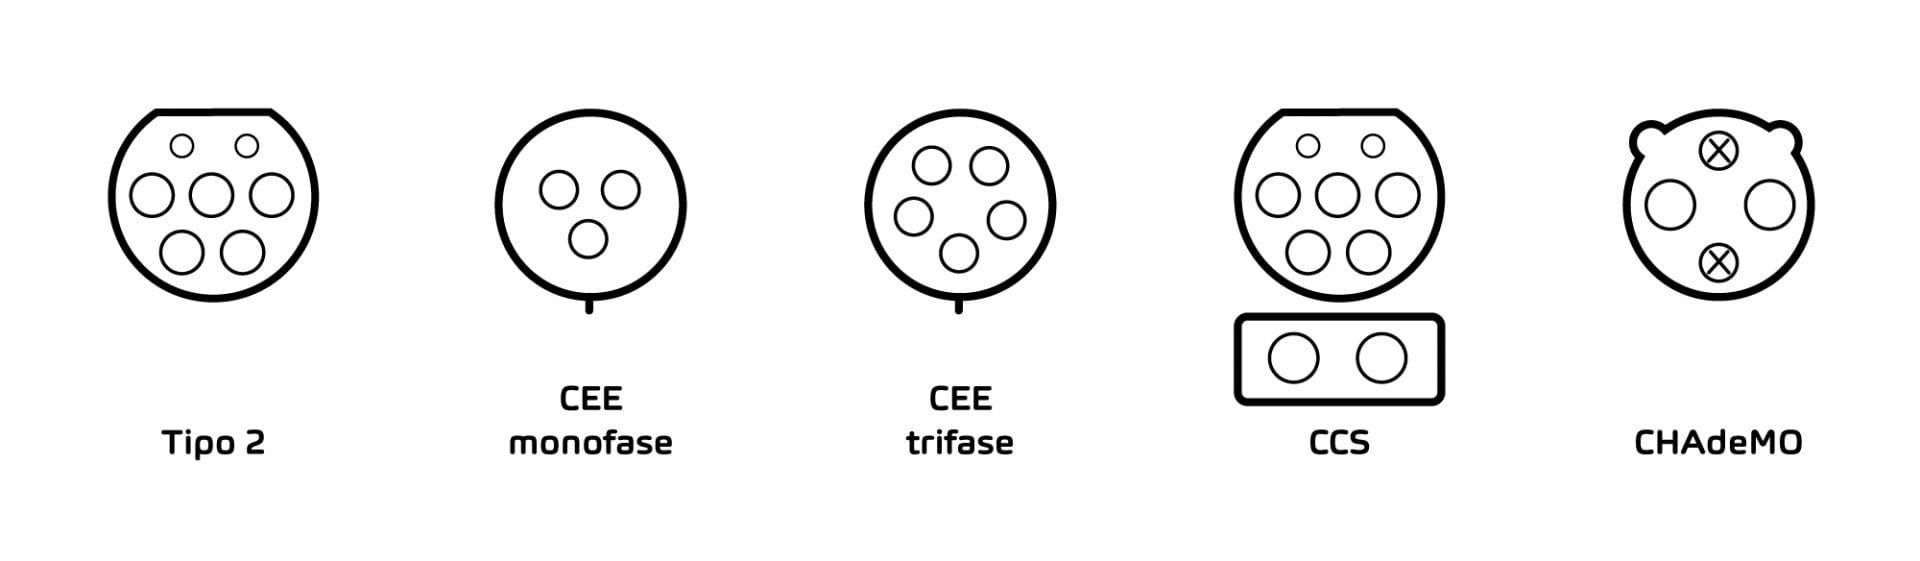 Immagine che confronta i tipi di connettore «tipo 2», «CEE», «CCS» e «CHAdeMO».